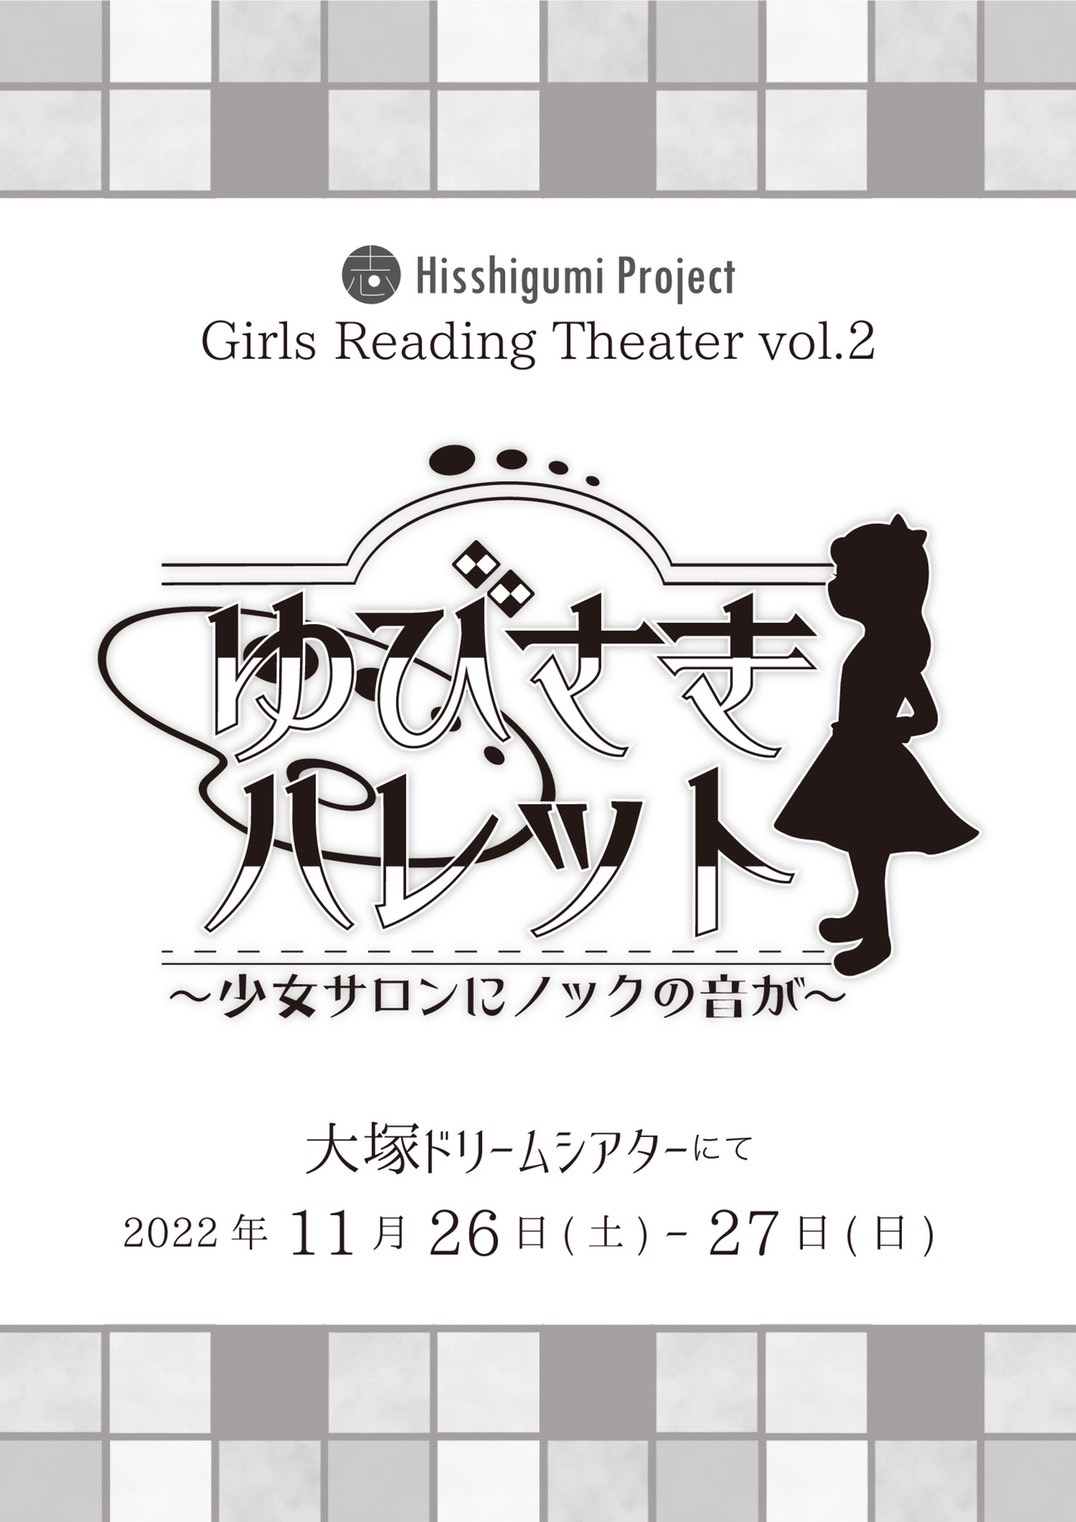 Hisshigumi Project Girls Reading Theater　VOL.2朗読劇『ゆびさきパレット～少女サロンにノックの音が～』